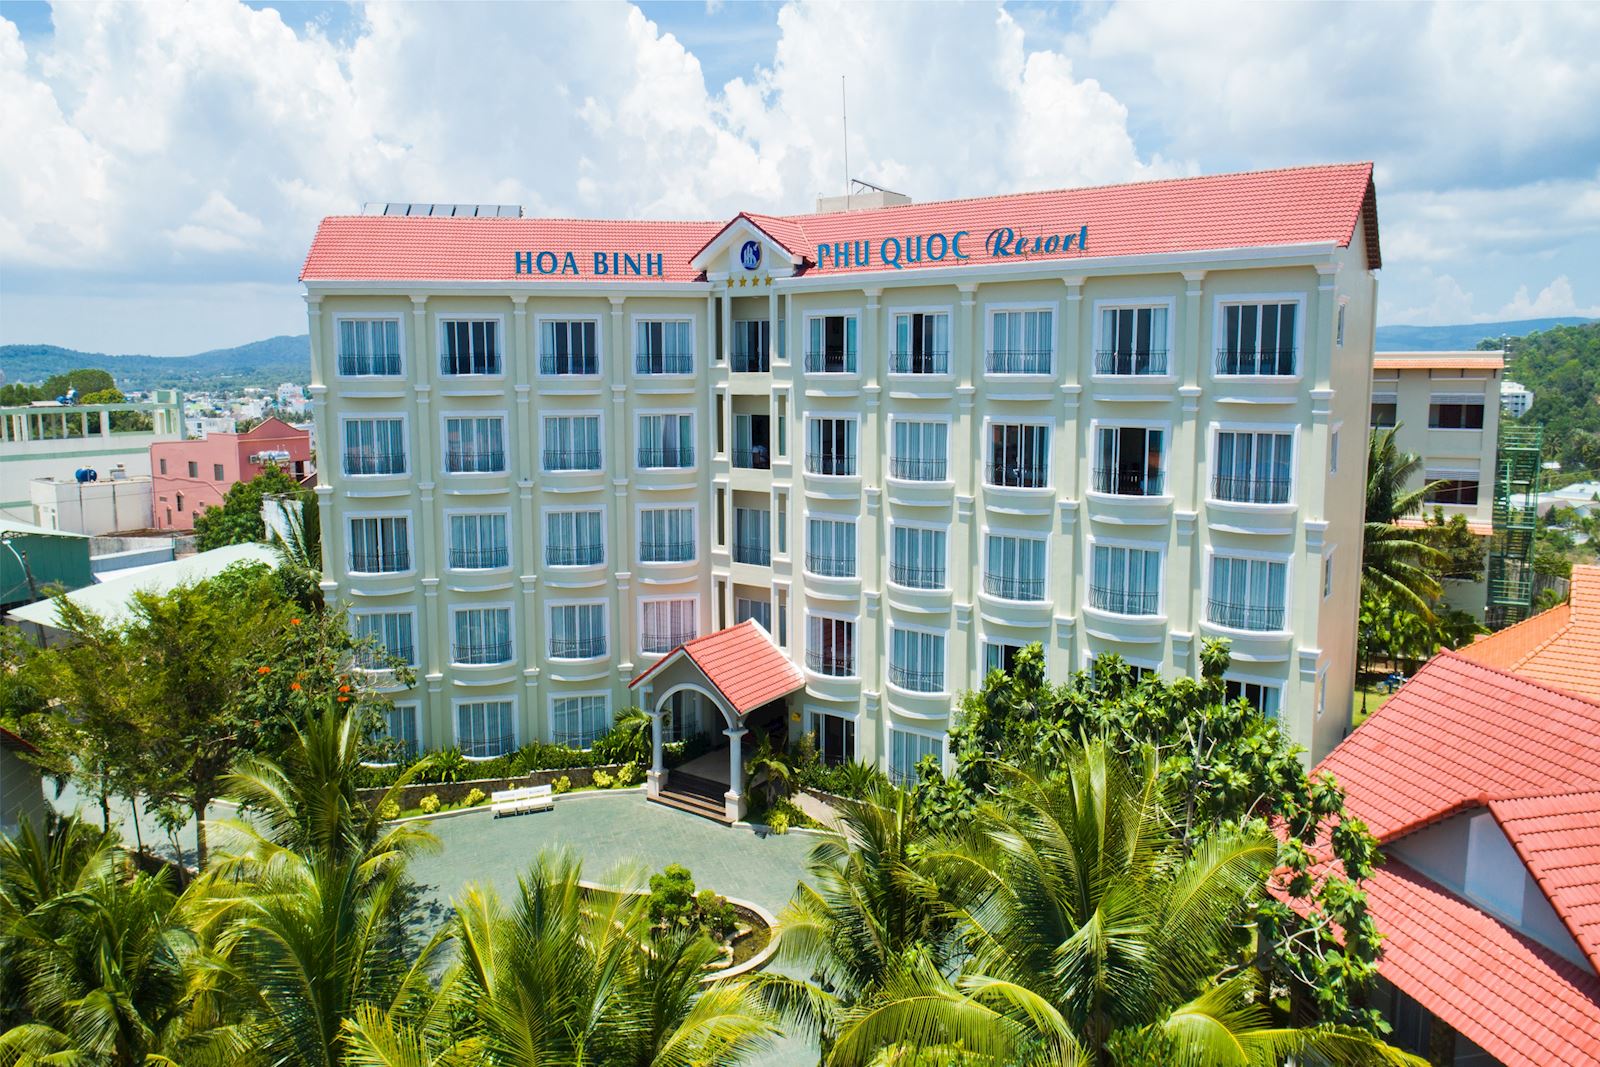 Hòa Bình Phú Quốc Reosrt - Resort 4 sao đầu tiên tại Phú Quốc